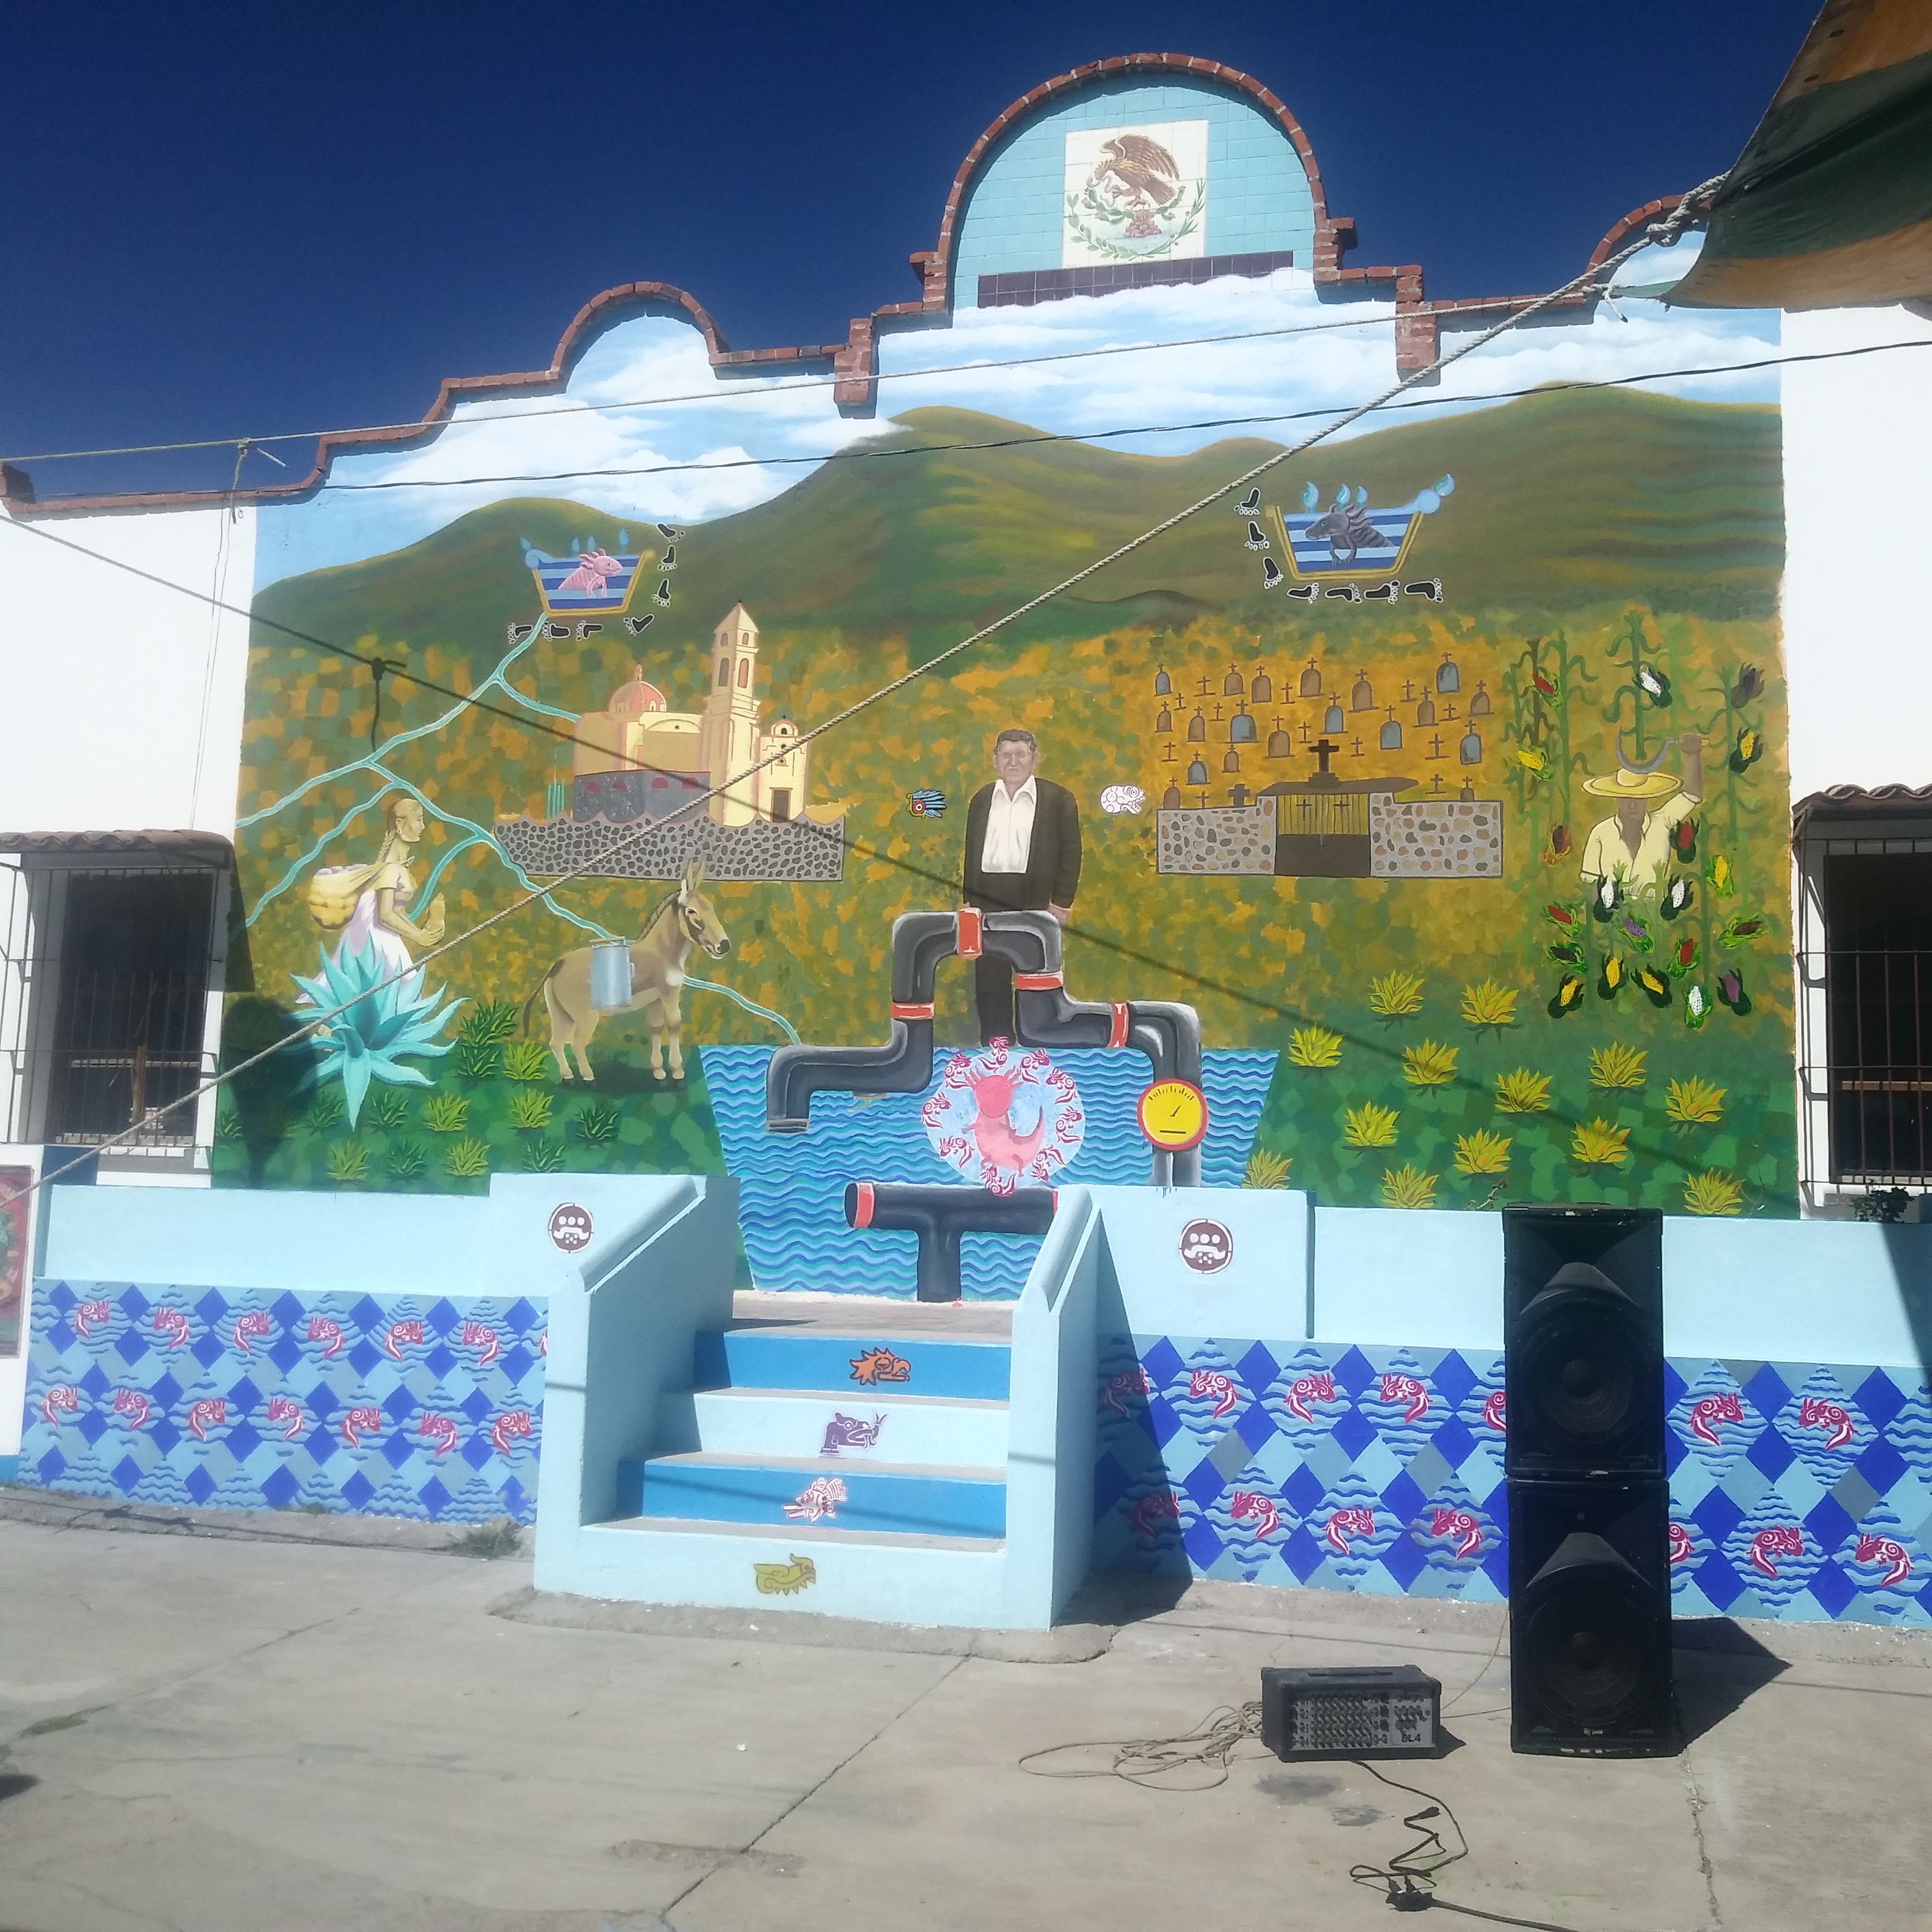 Jornadas “Samir Somos Todas y Todos”, Inauguran mural por la identidad cultural y la memoria colectiva del pueblo de Santa María Ajoloapan, Tecámac, Estado de México